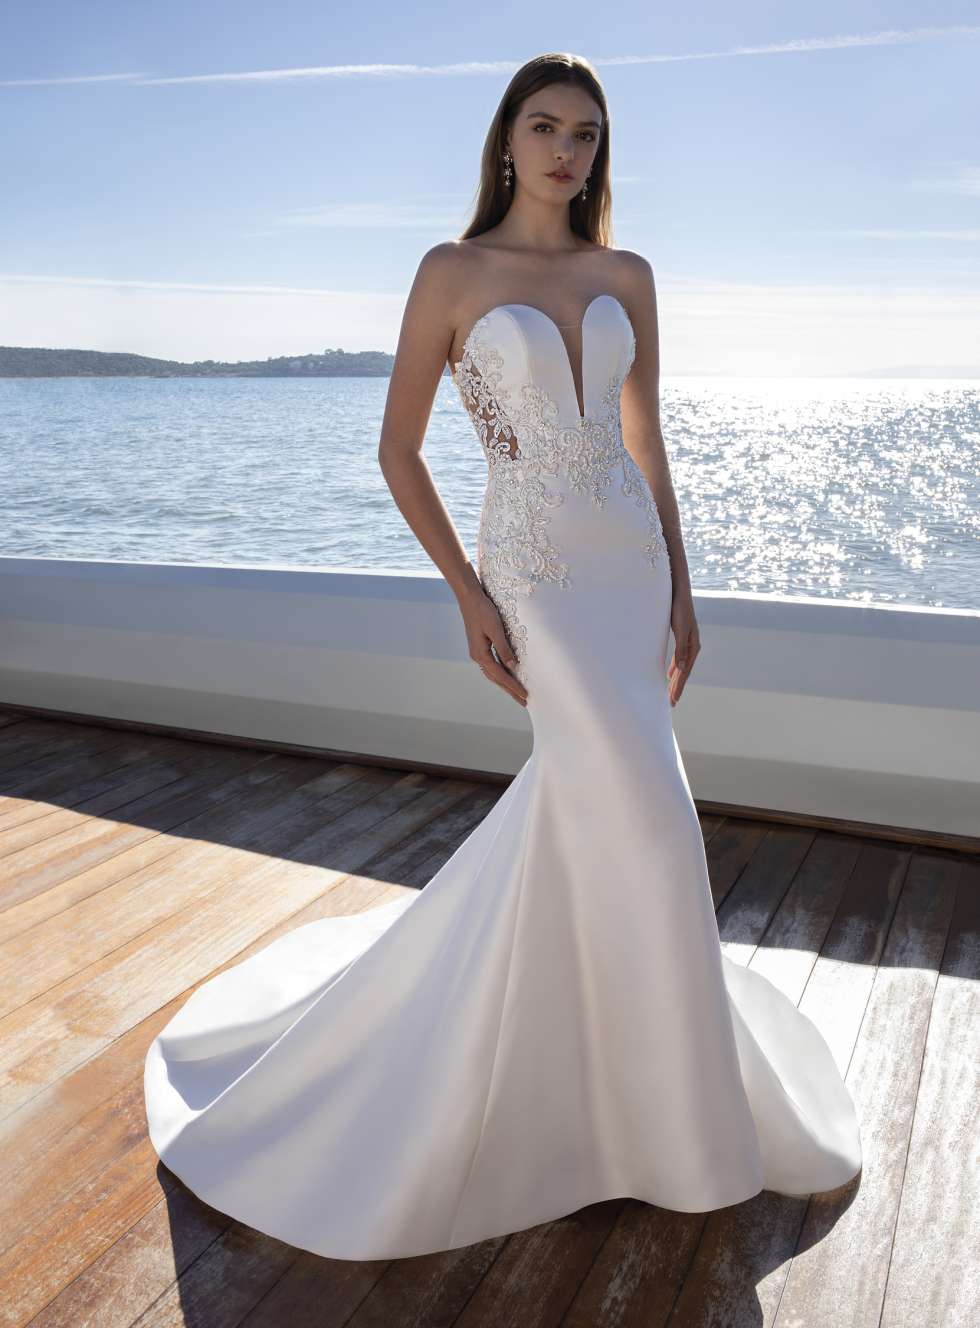 مجموعة كوزموبيلا لفساتين زفاف 2020 من ديمتريوس